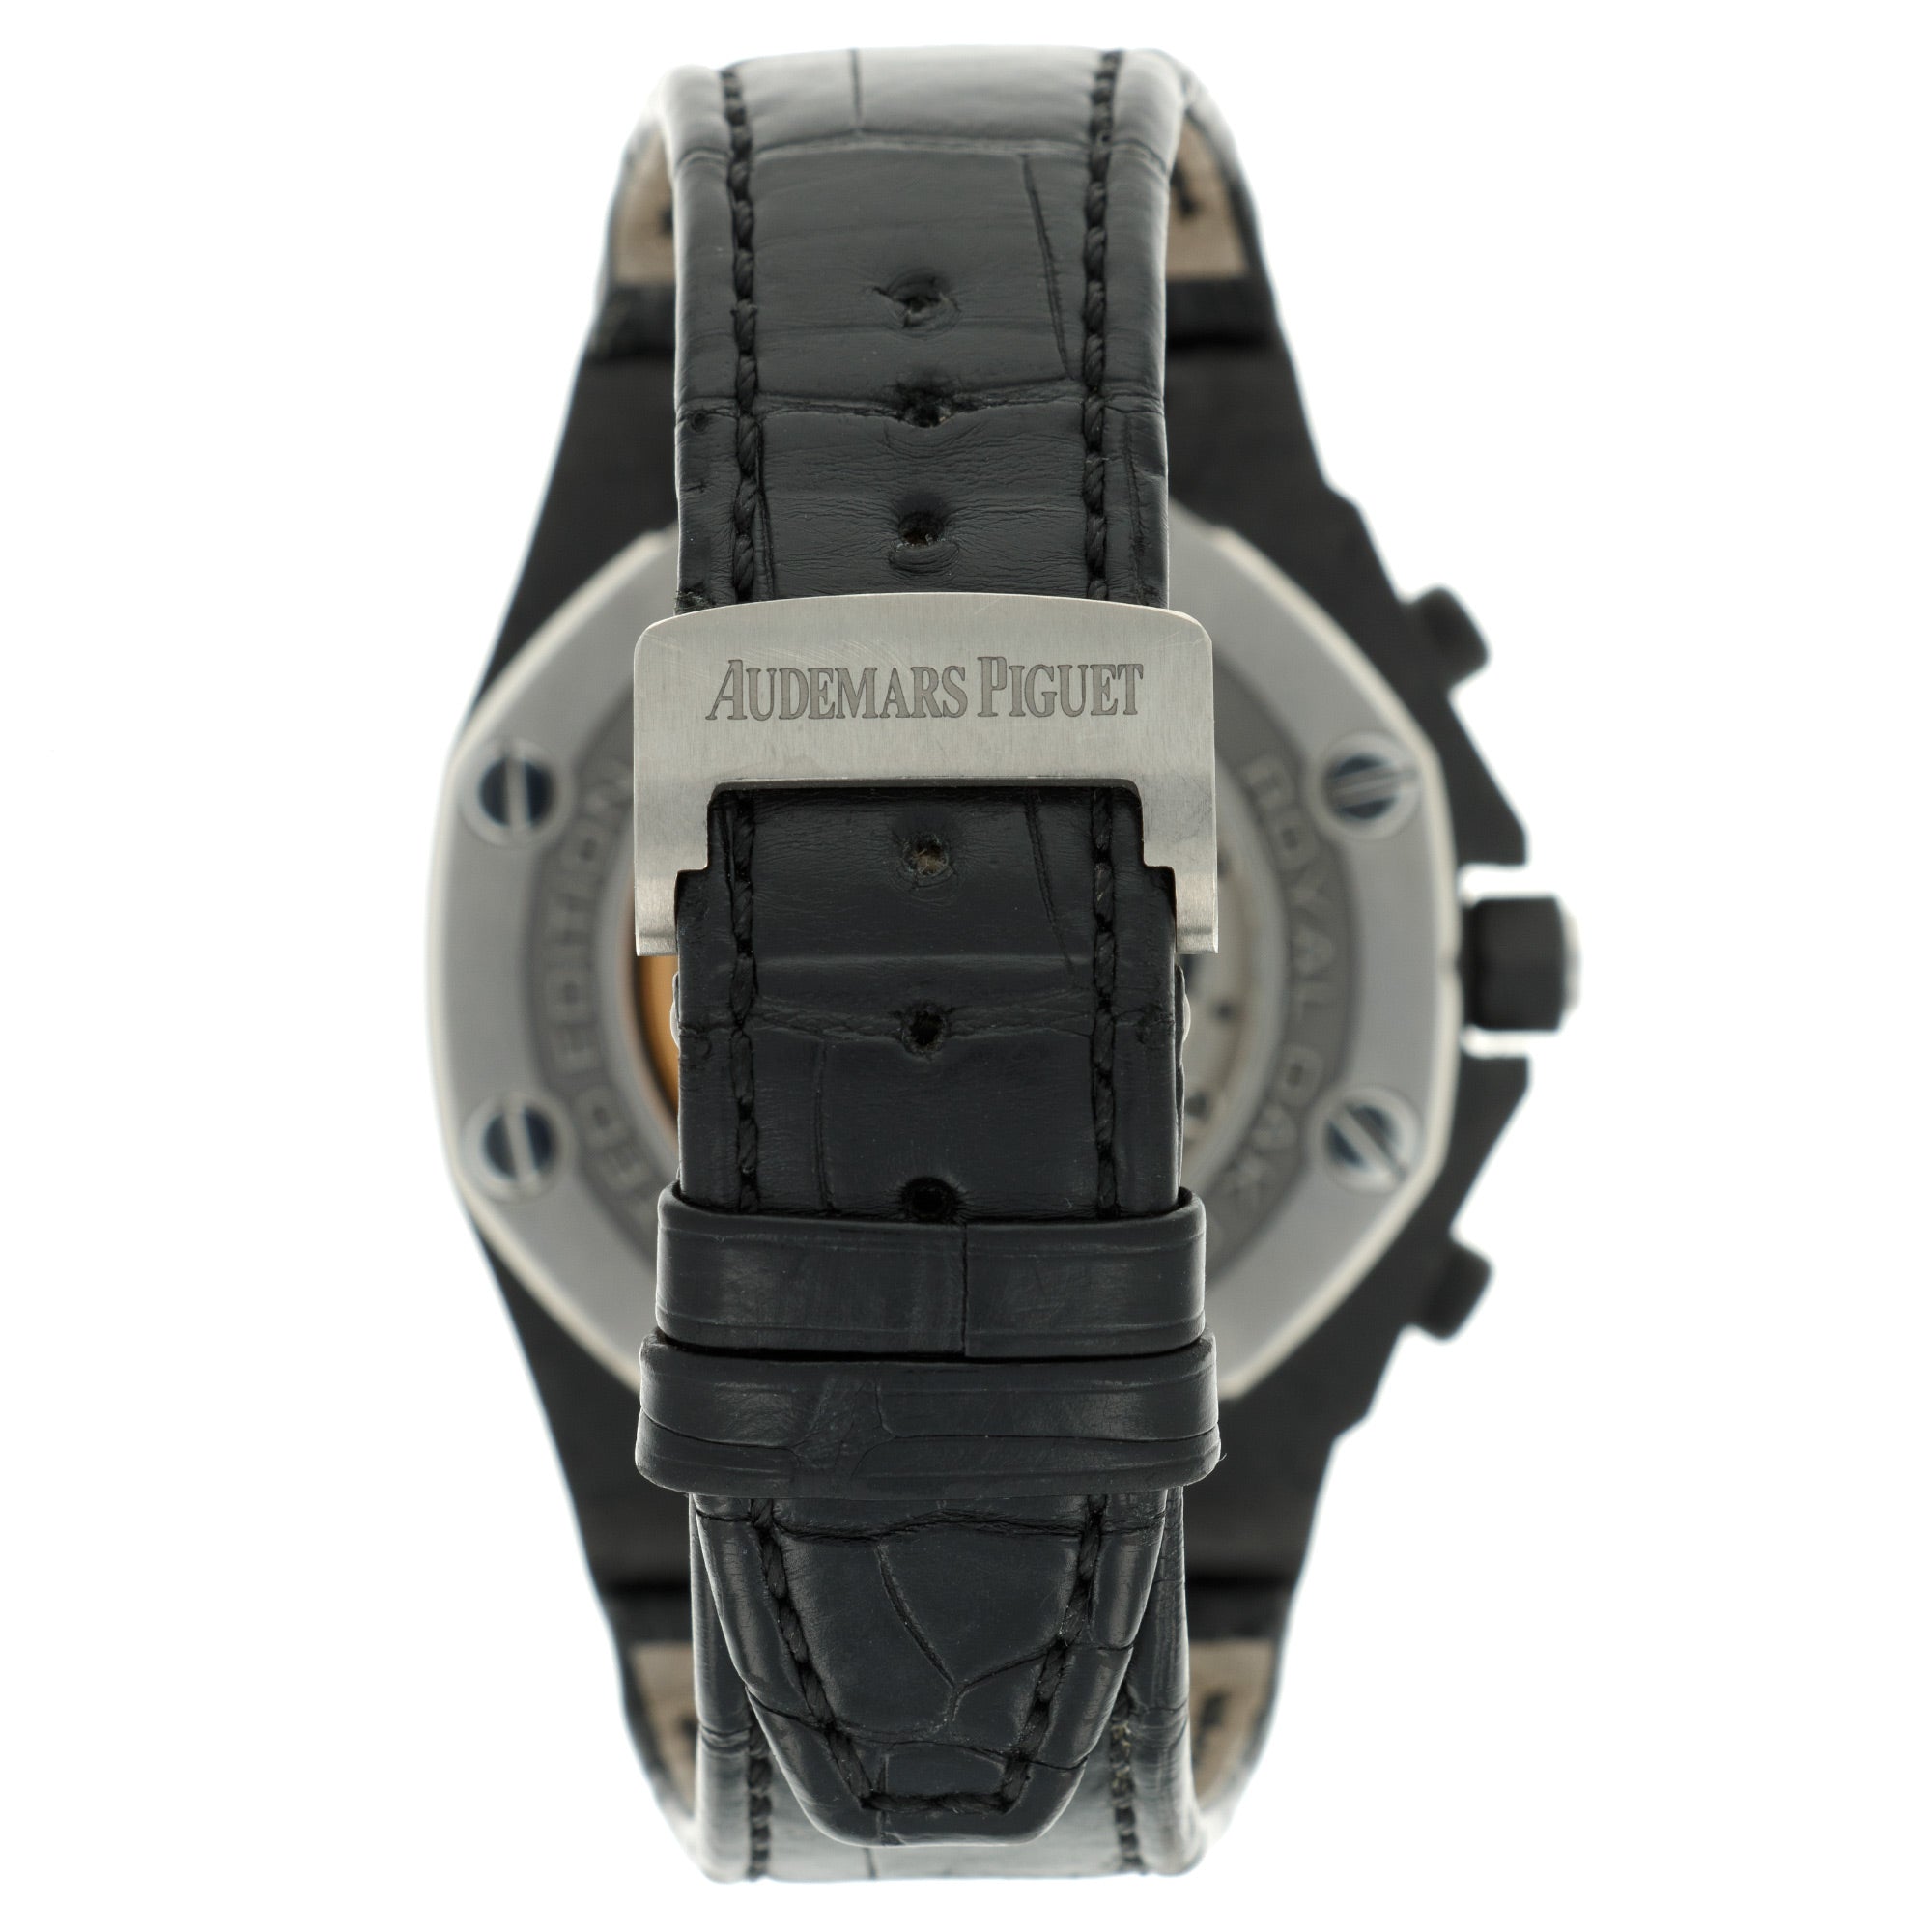 Audemars Piguet - Audemars Piguet Royal Oak Offshore Ginza Carbon Fiber Ref. 26205 - The Keystone Watches